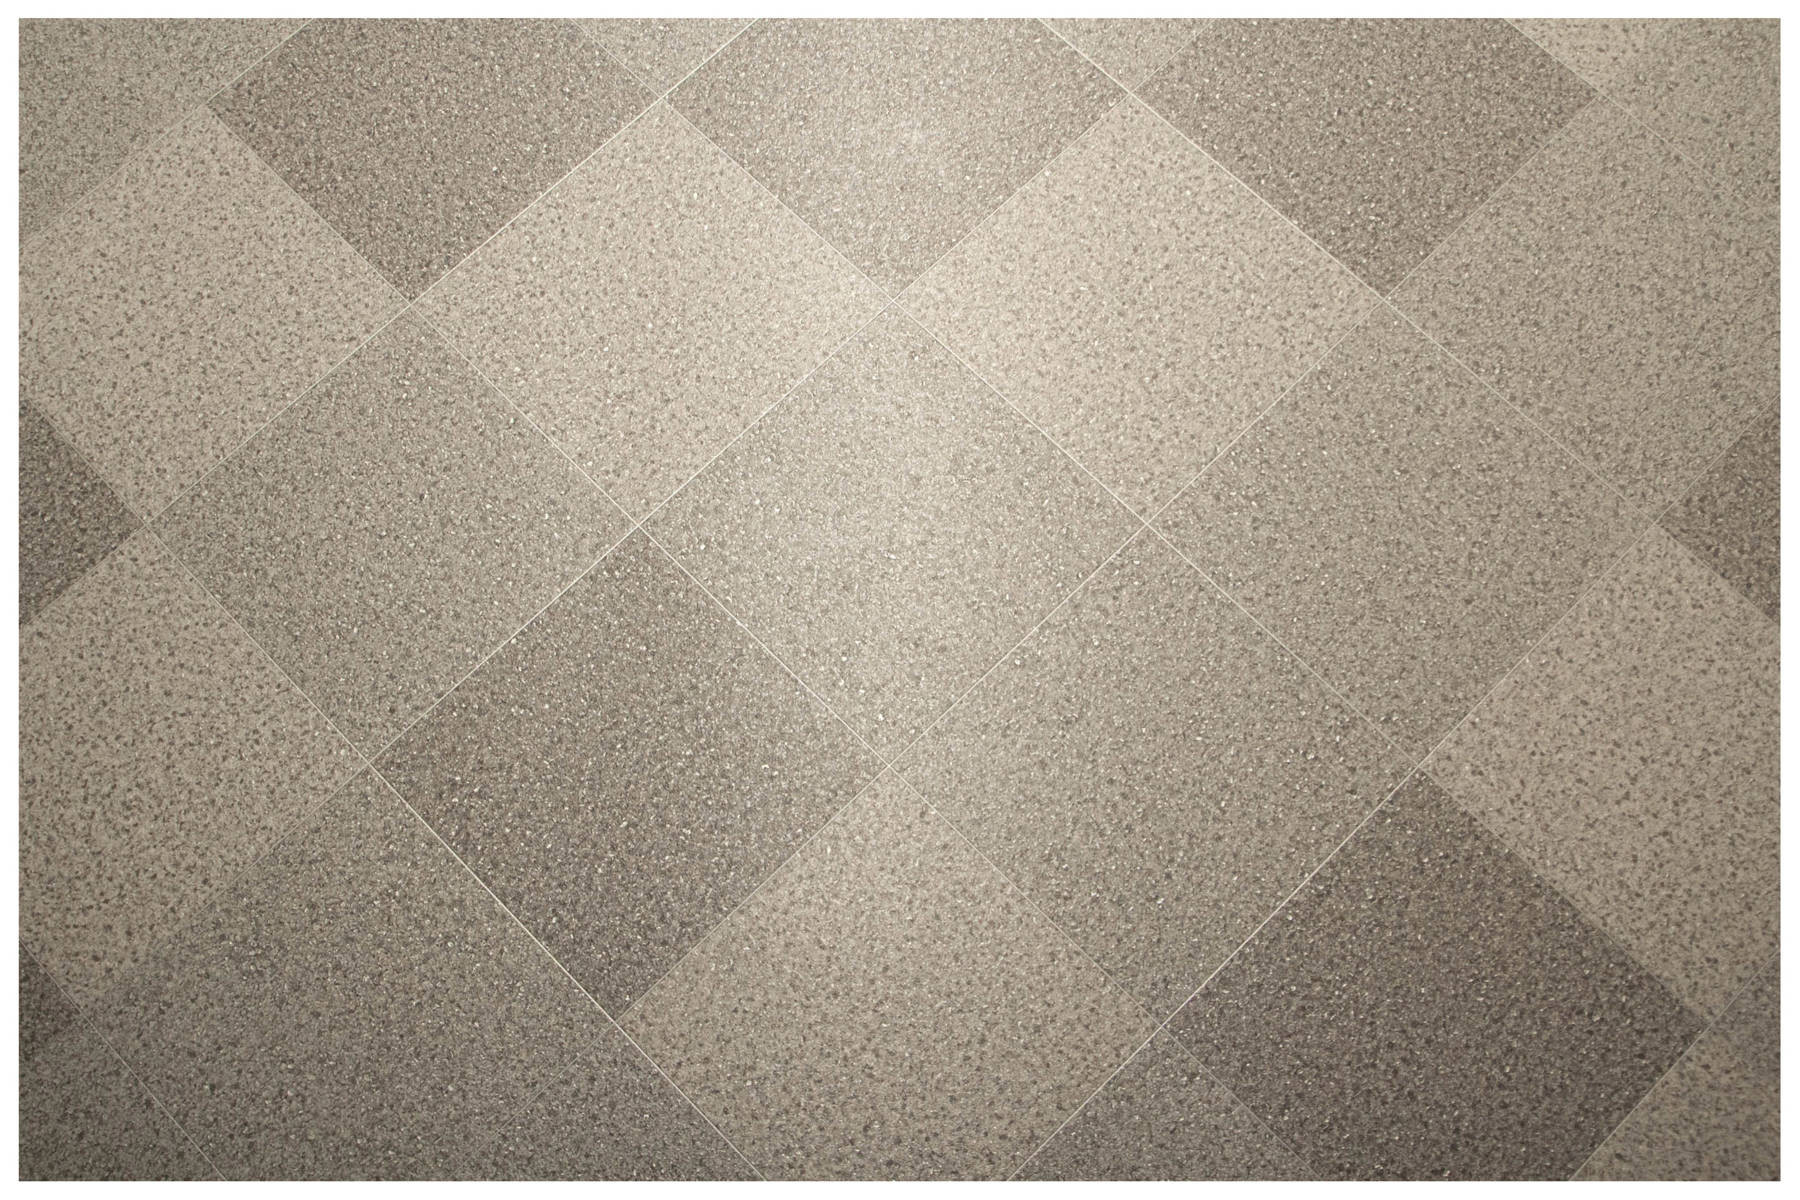 PVC podlaha Actual Plus Ice Diamond 0093 sivá / strieborná 